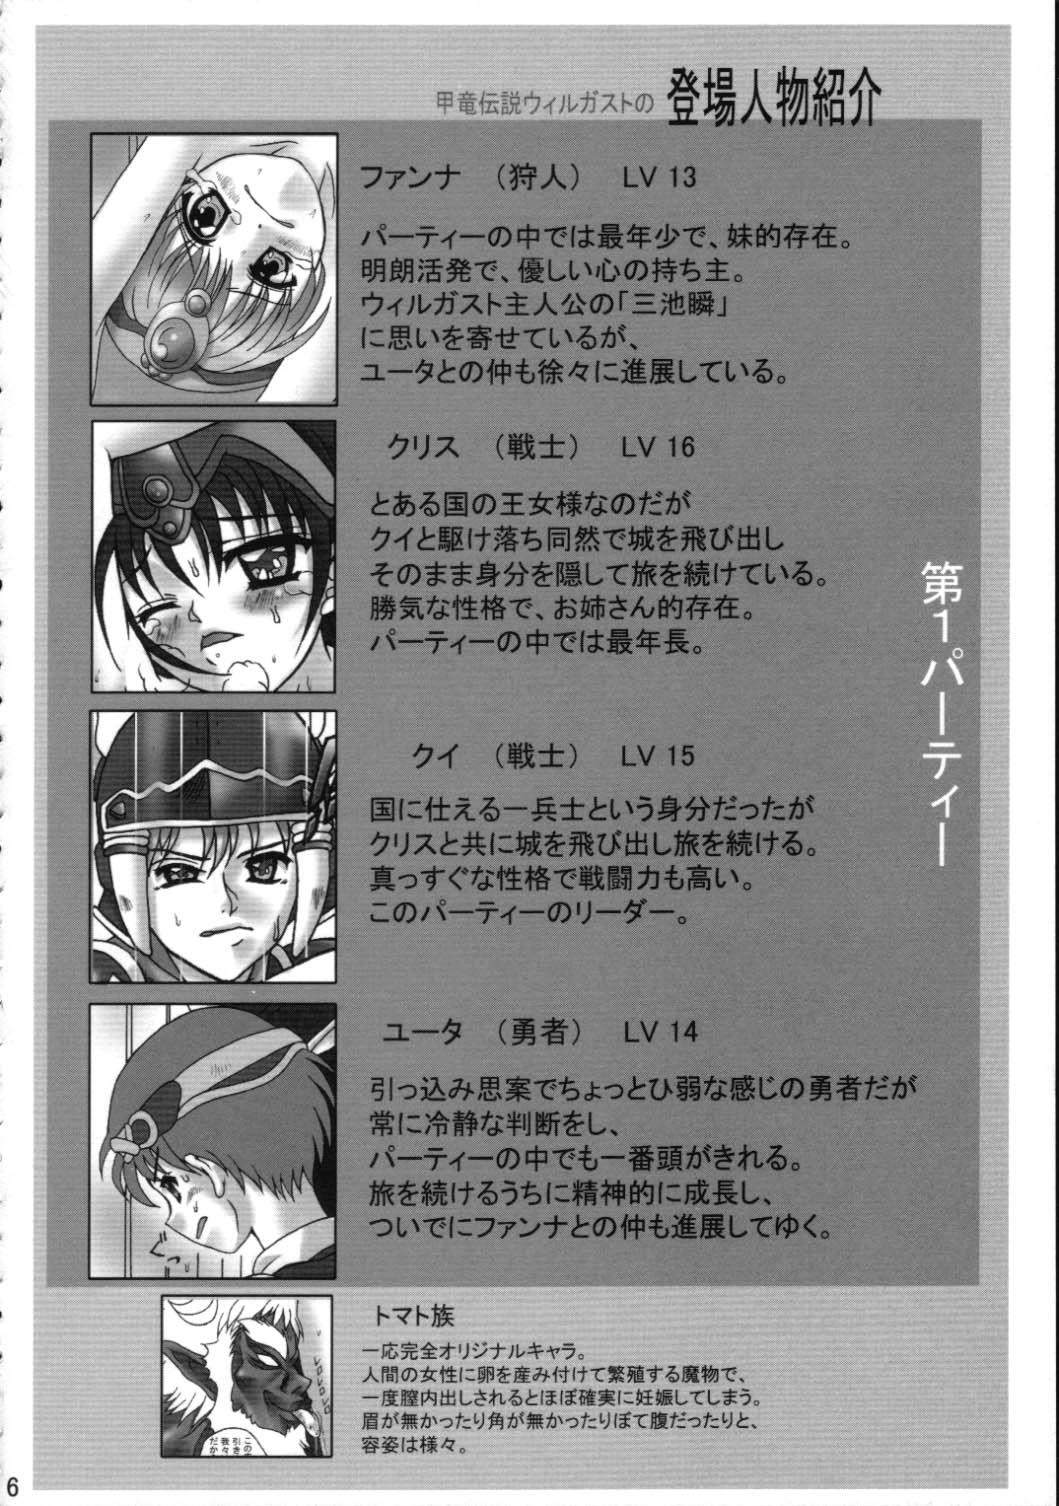 Footworship Toraware no Shoujo - Kouryuu densetsu villgust Romantic - Page 5